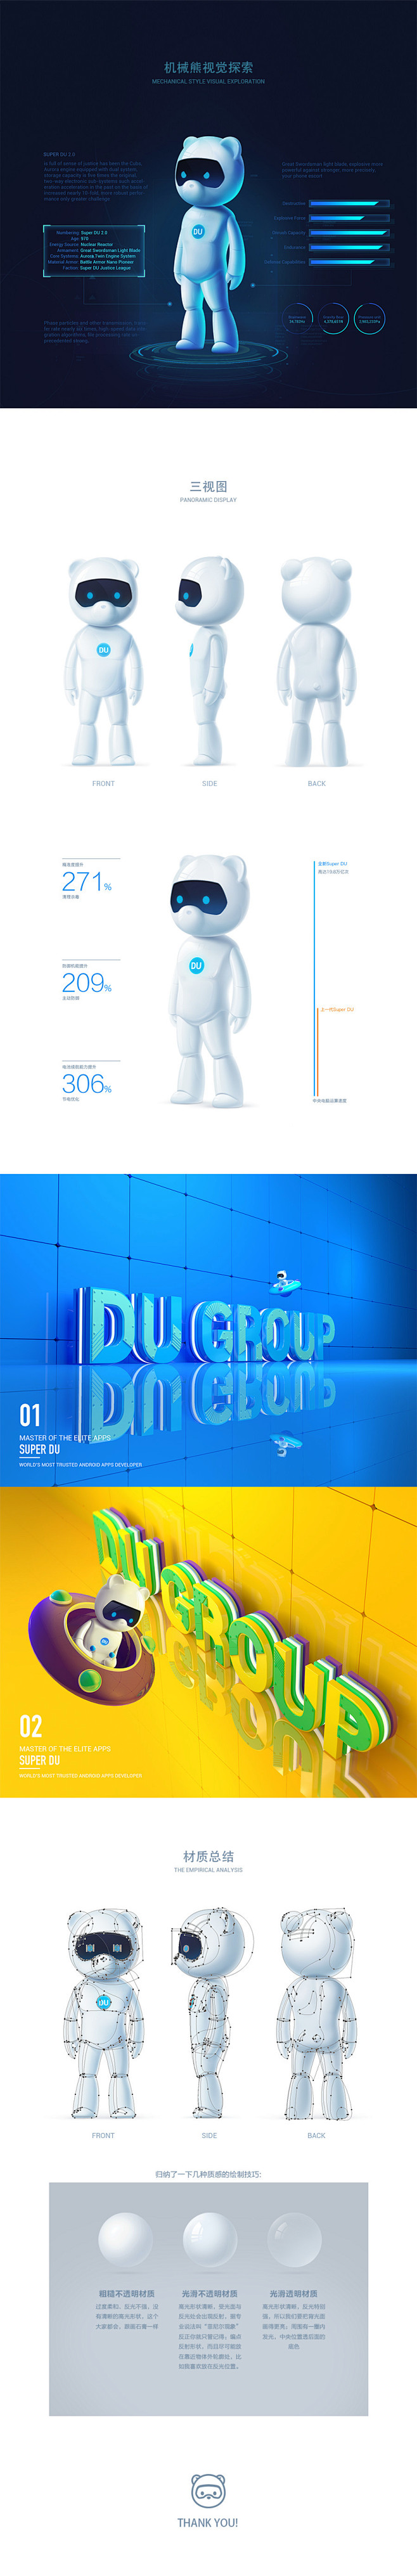 DU熊——百度国际部品牌形象改版